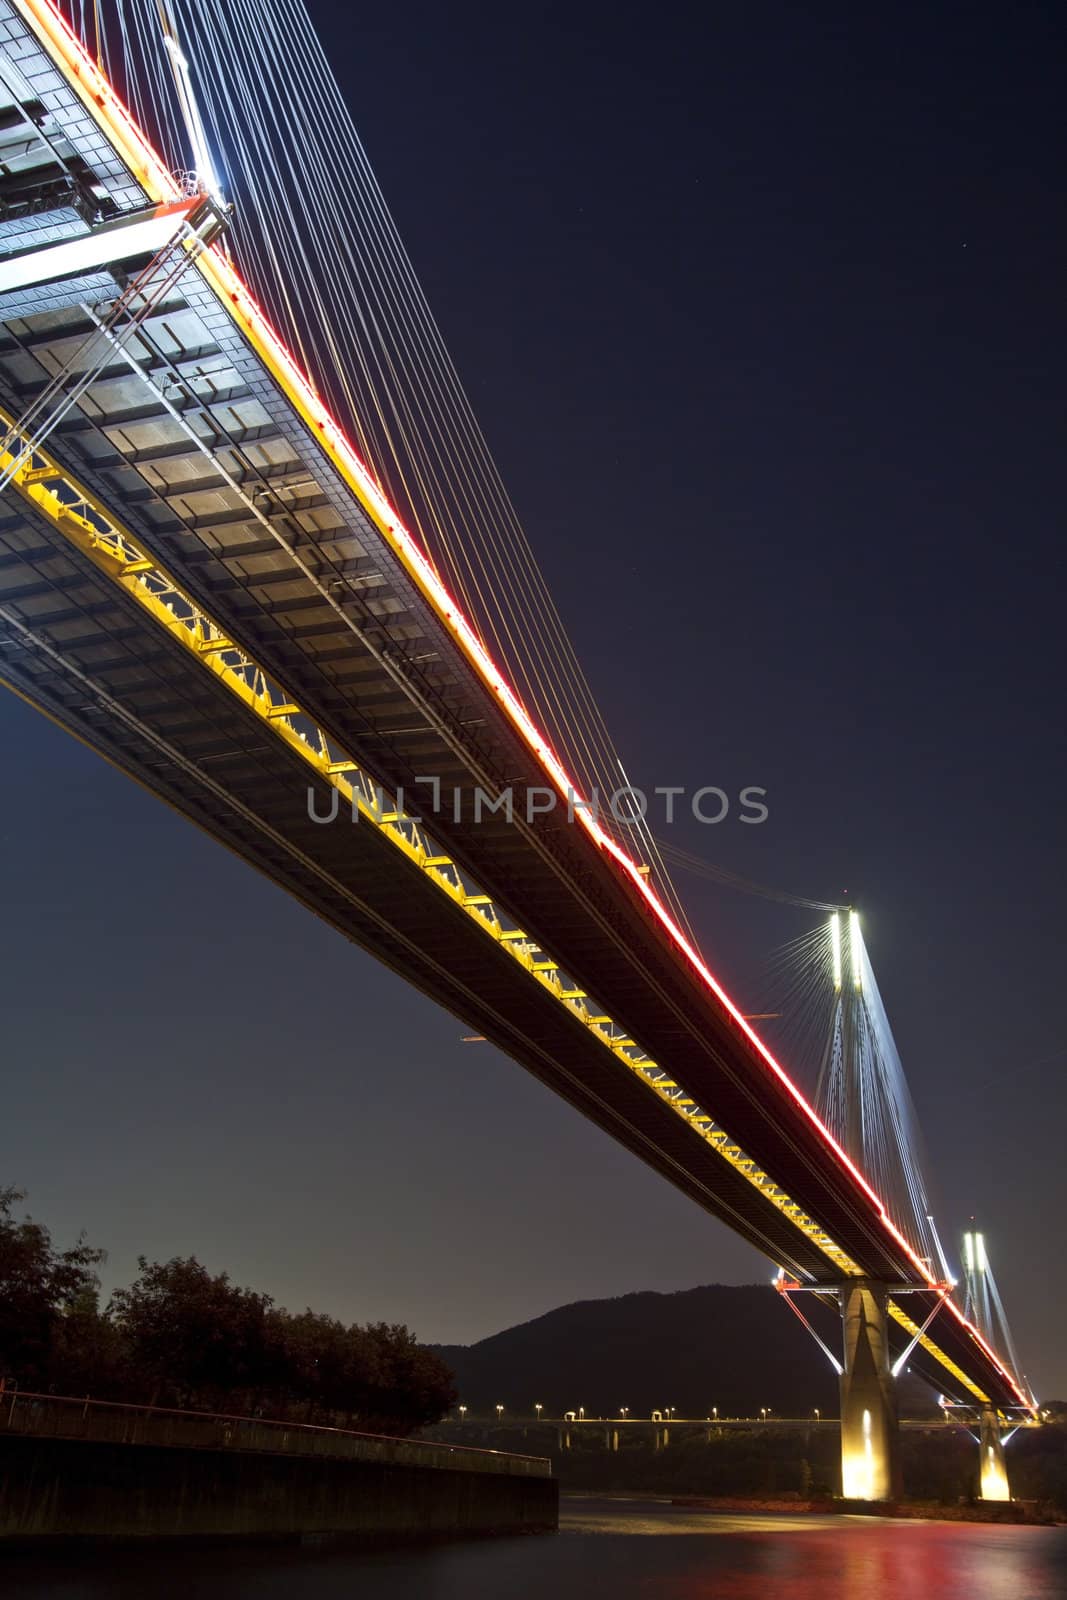 Ting Kau Bridge in Hong Kong at night